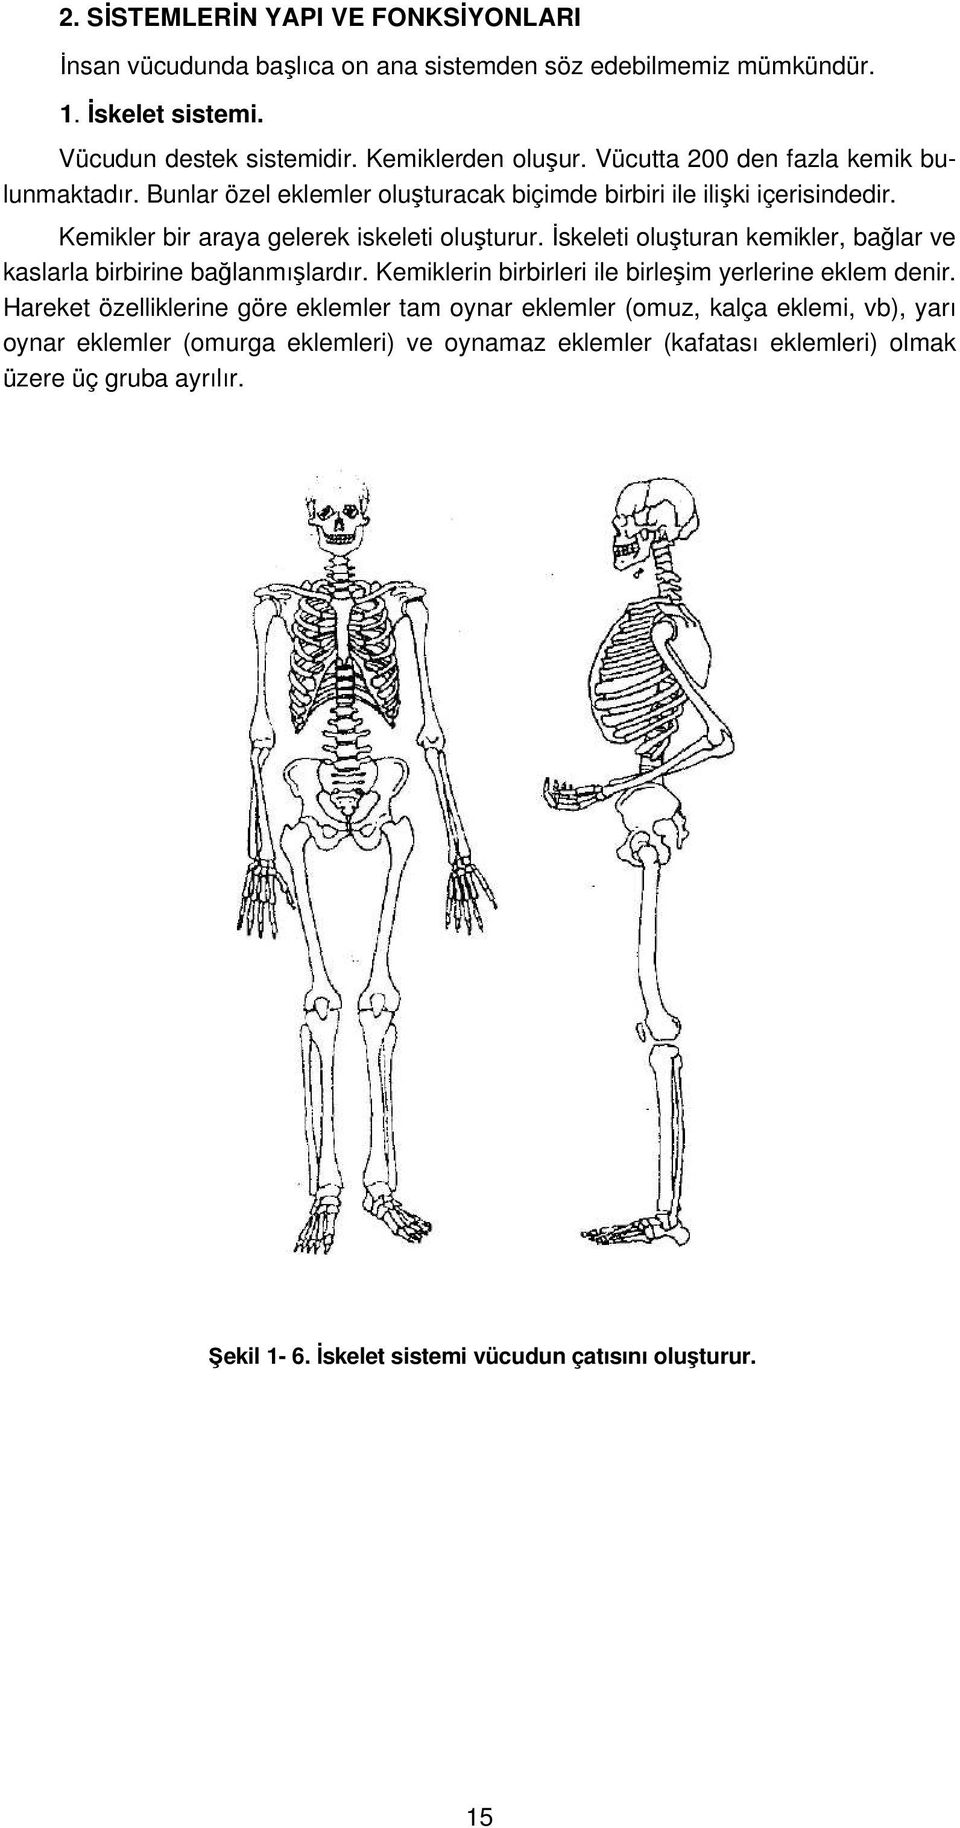 İskeleti oluşturan kemikler, bağlar ve kaslarla birbirine bağlanmışlardır. Kemiklerin birbirleri ile birleşim yerlerine eklem denir.